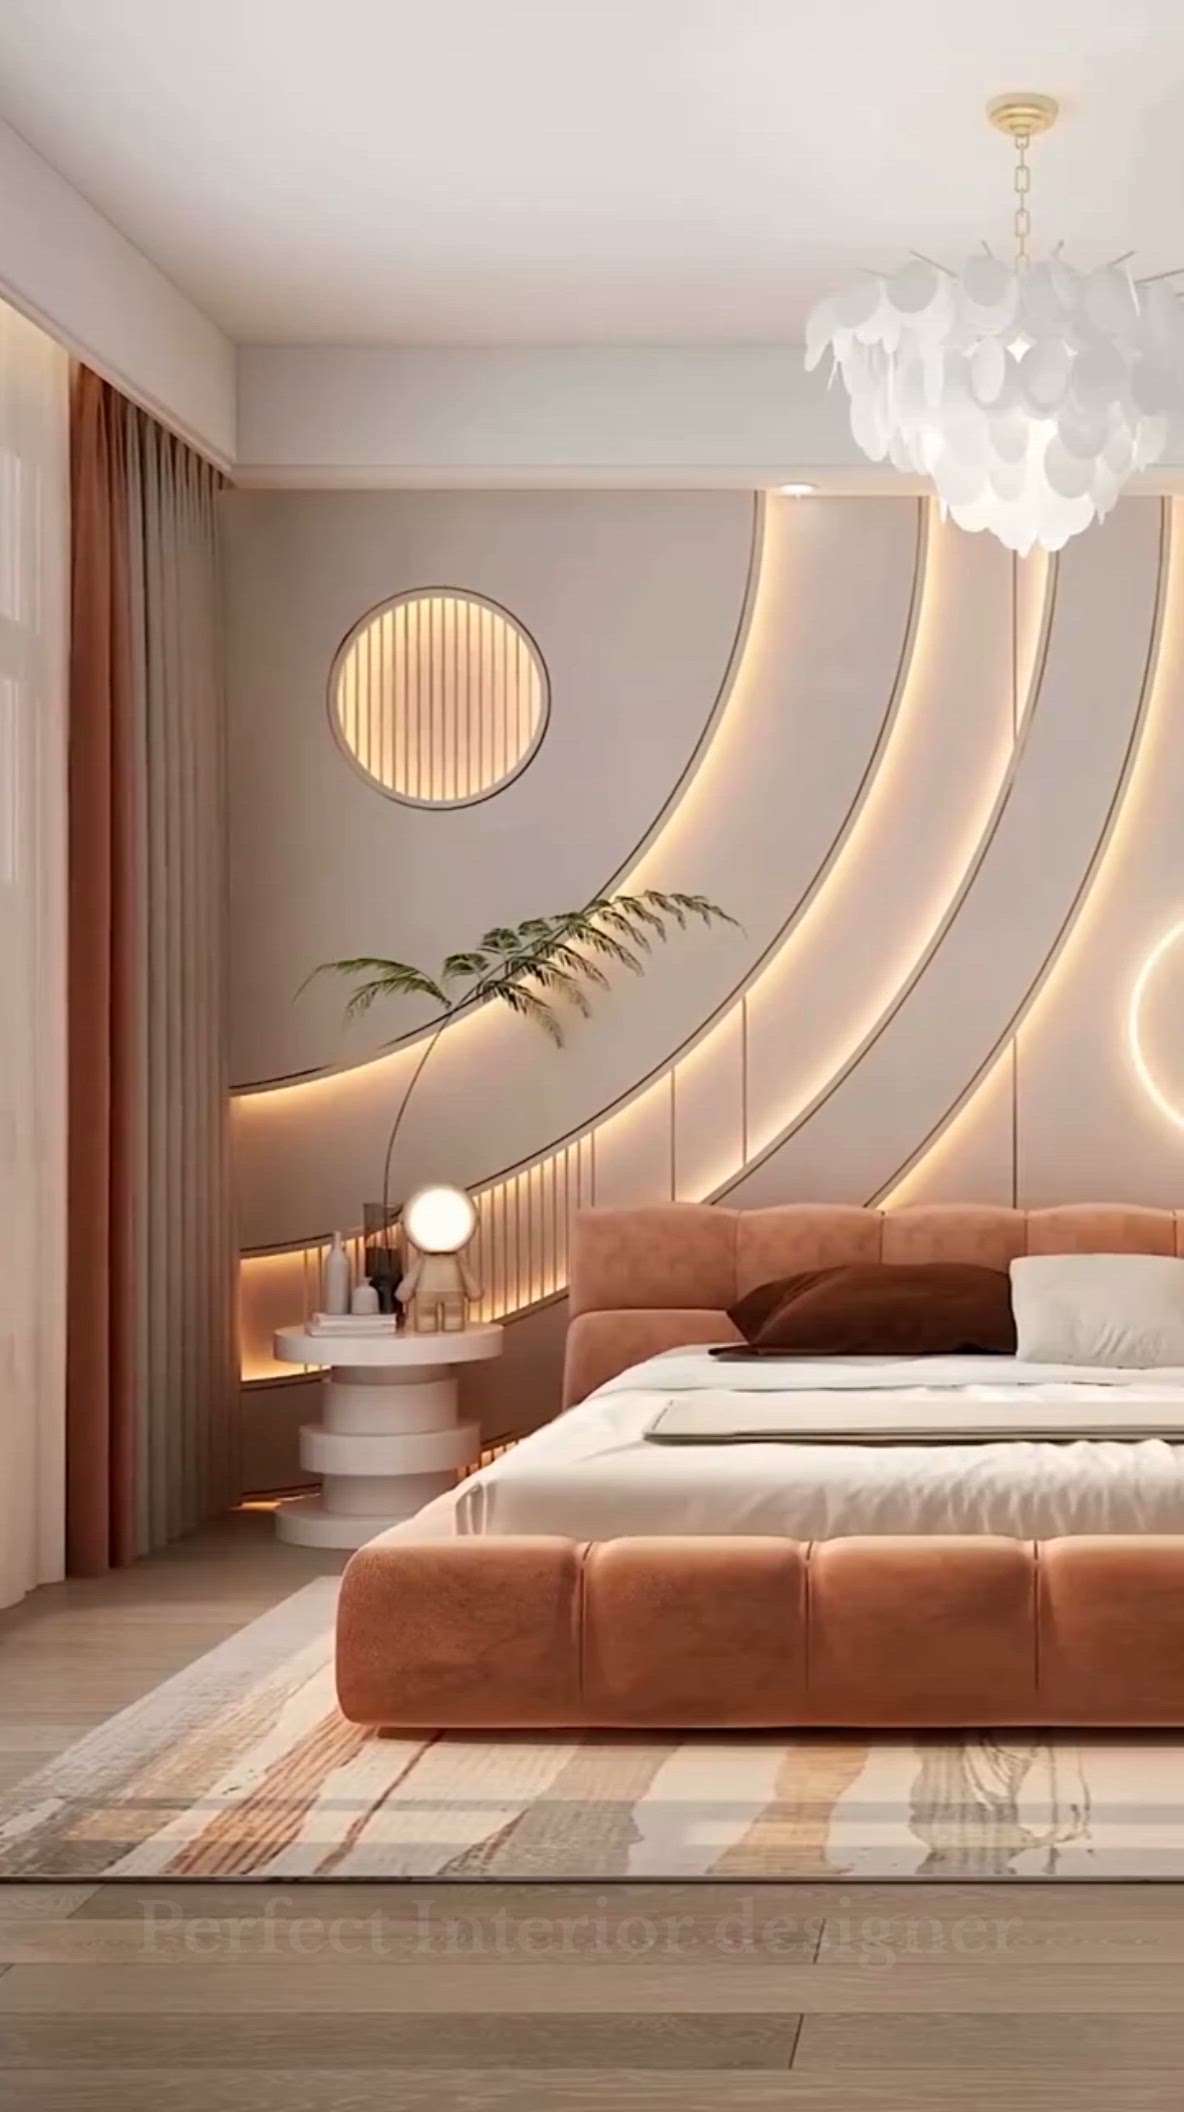 #laxuarybedroom  #MovableWardrobe  #InteriorDesigner  #LivingroomDesigns  #koreanfurniture